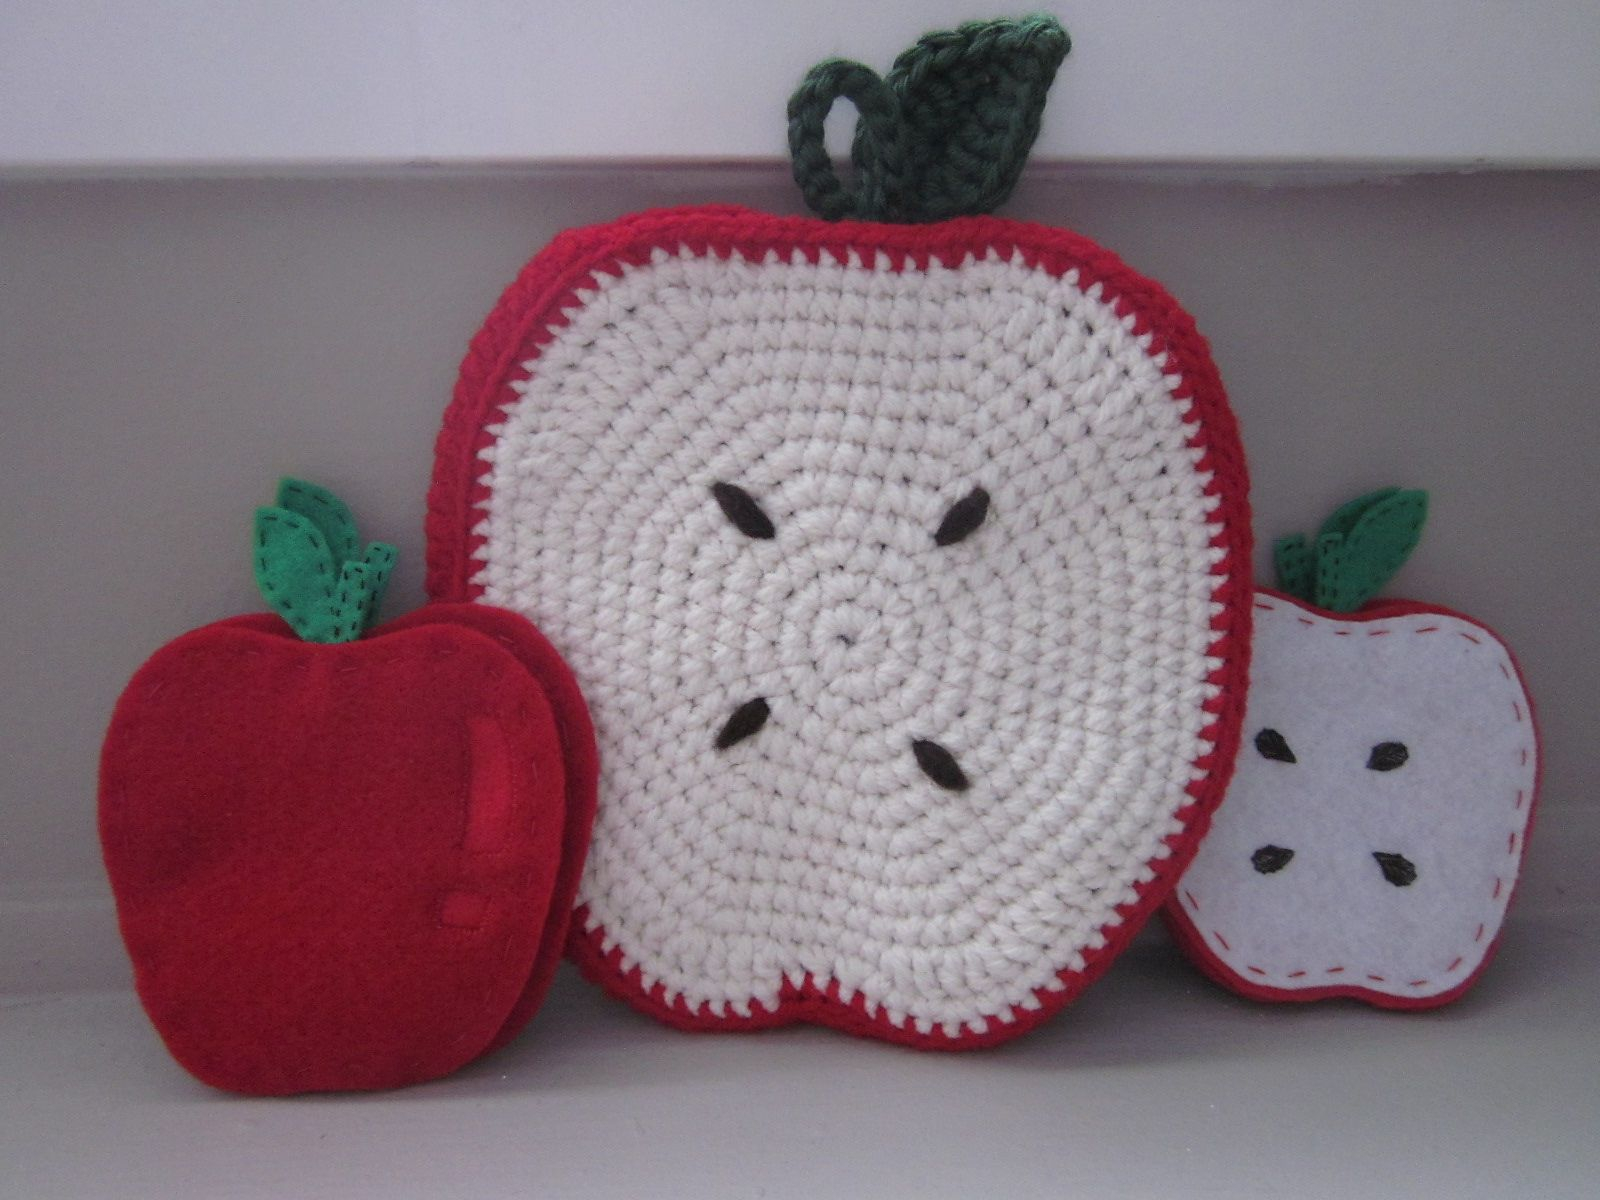 Crochet Apple Potholder Pattern Apple Trivet Potholder Lien Lu Free Crochet Pattern